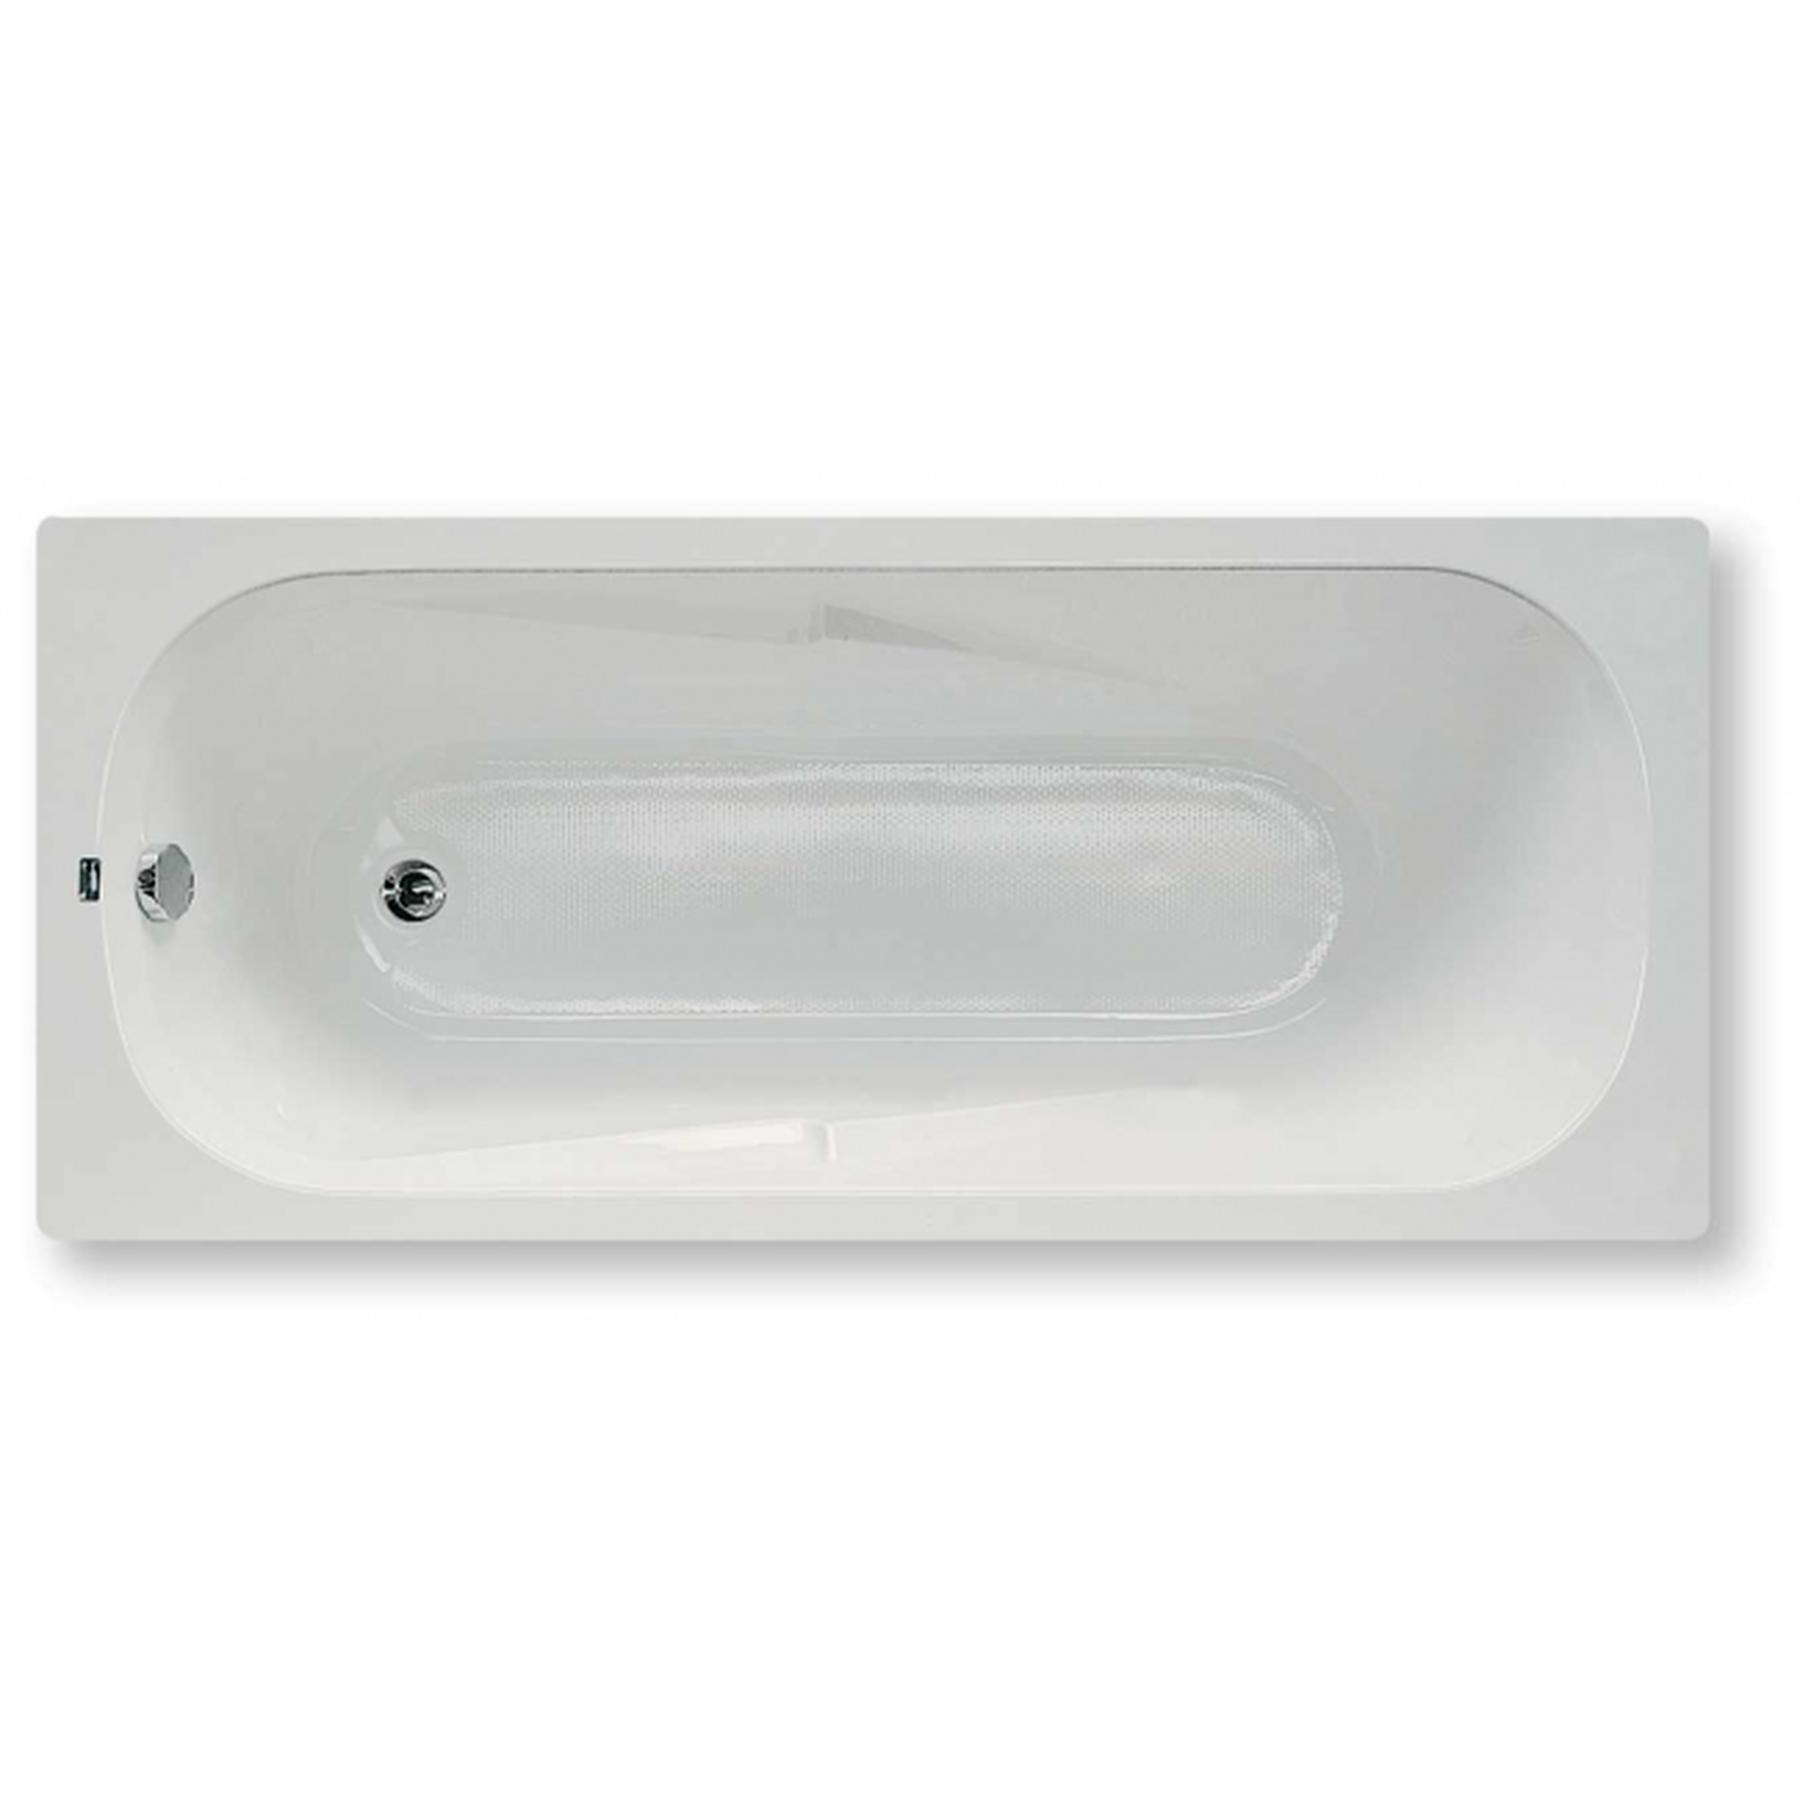 Baignoire acrylique Haute Densité Gamme PRO SANINDUSA Eva 160x75 couleur blanc avec réducteur de glisse vidage non inclus